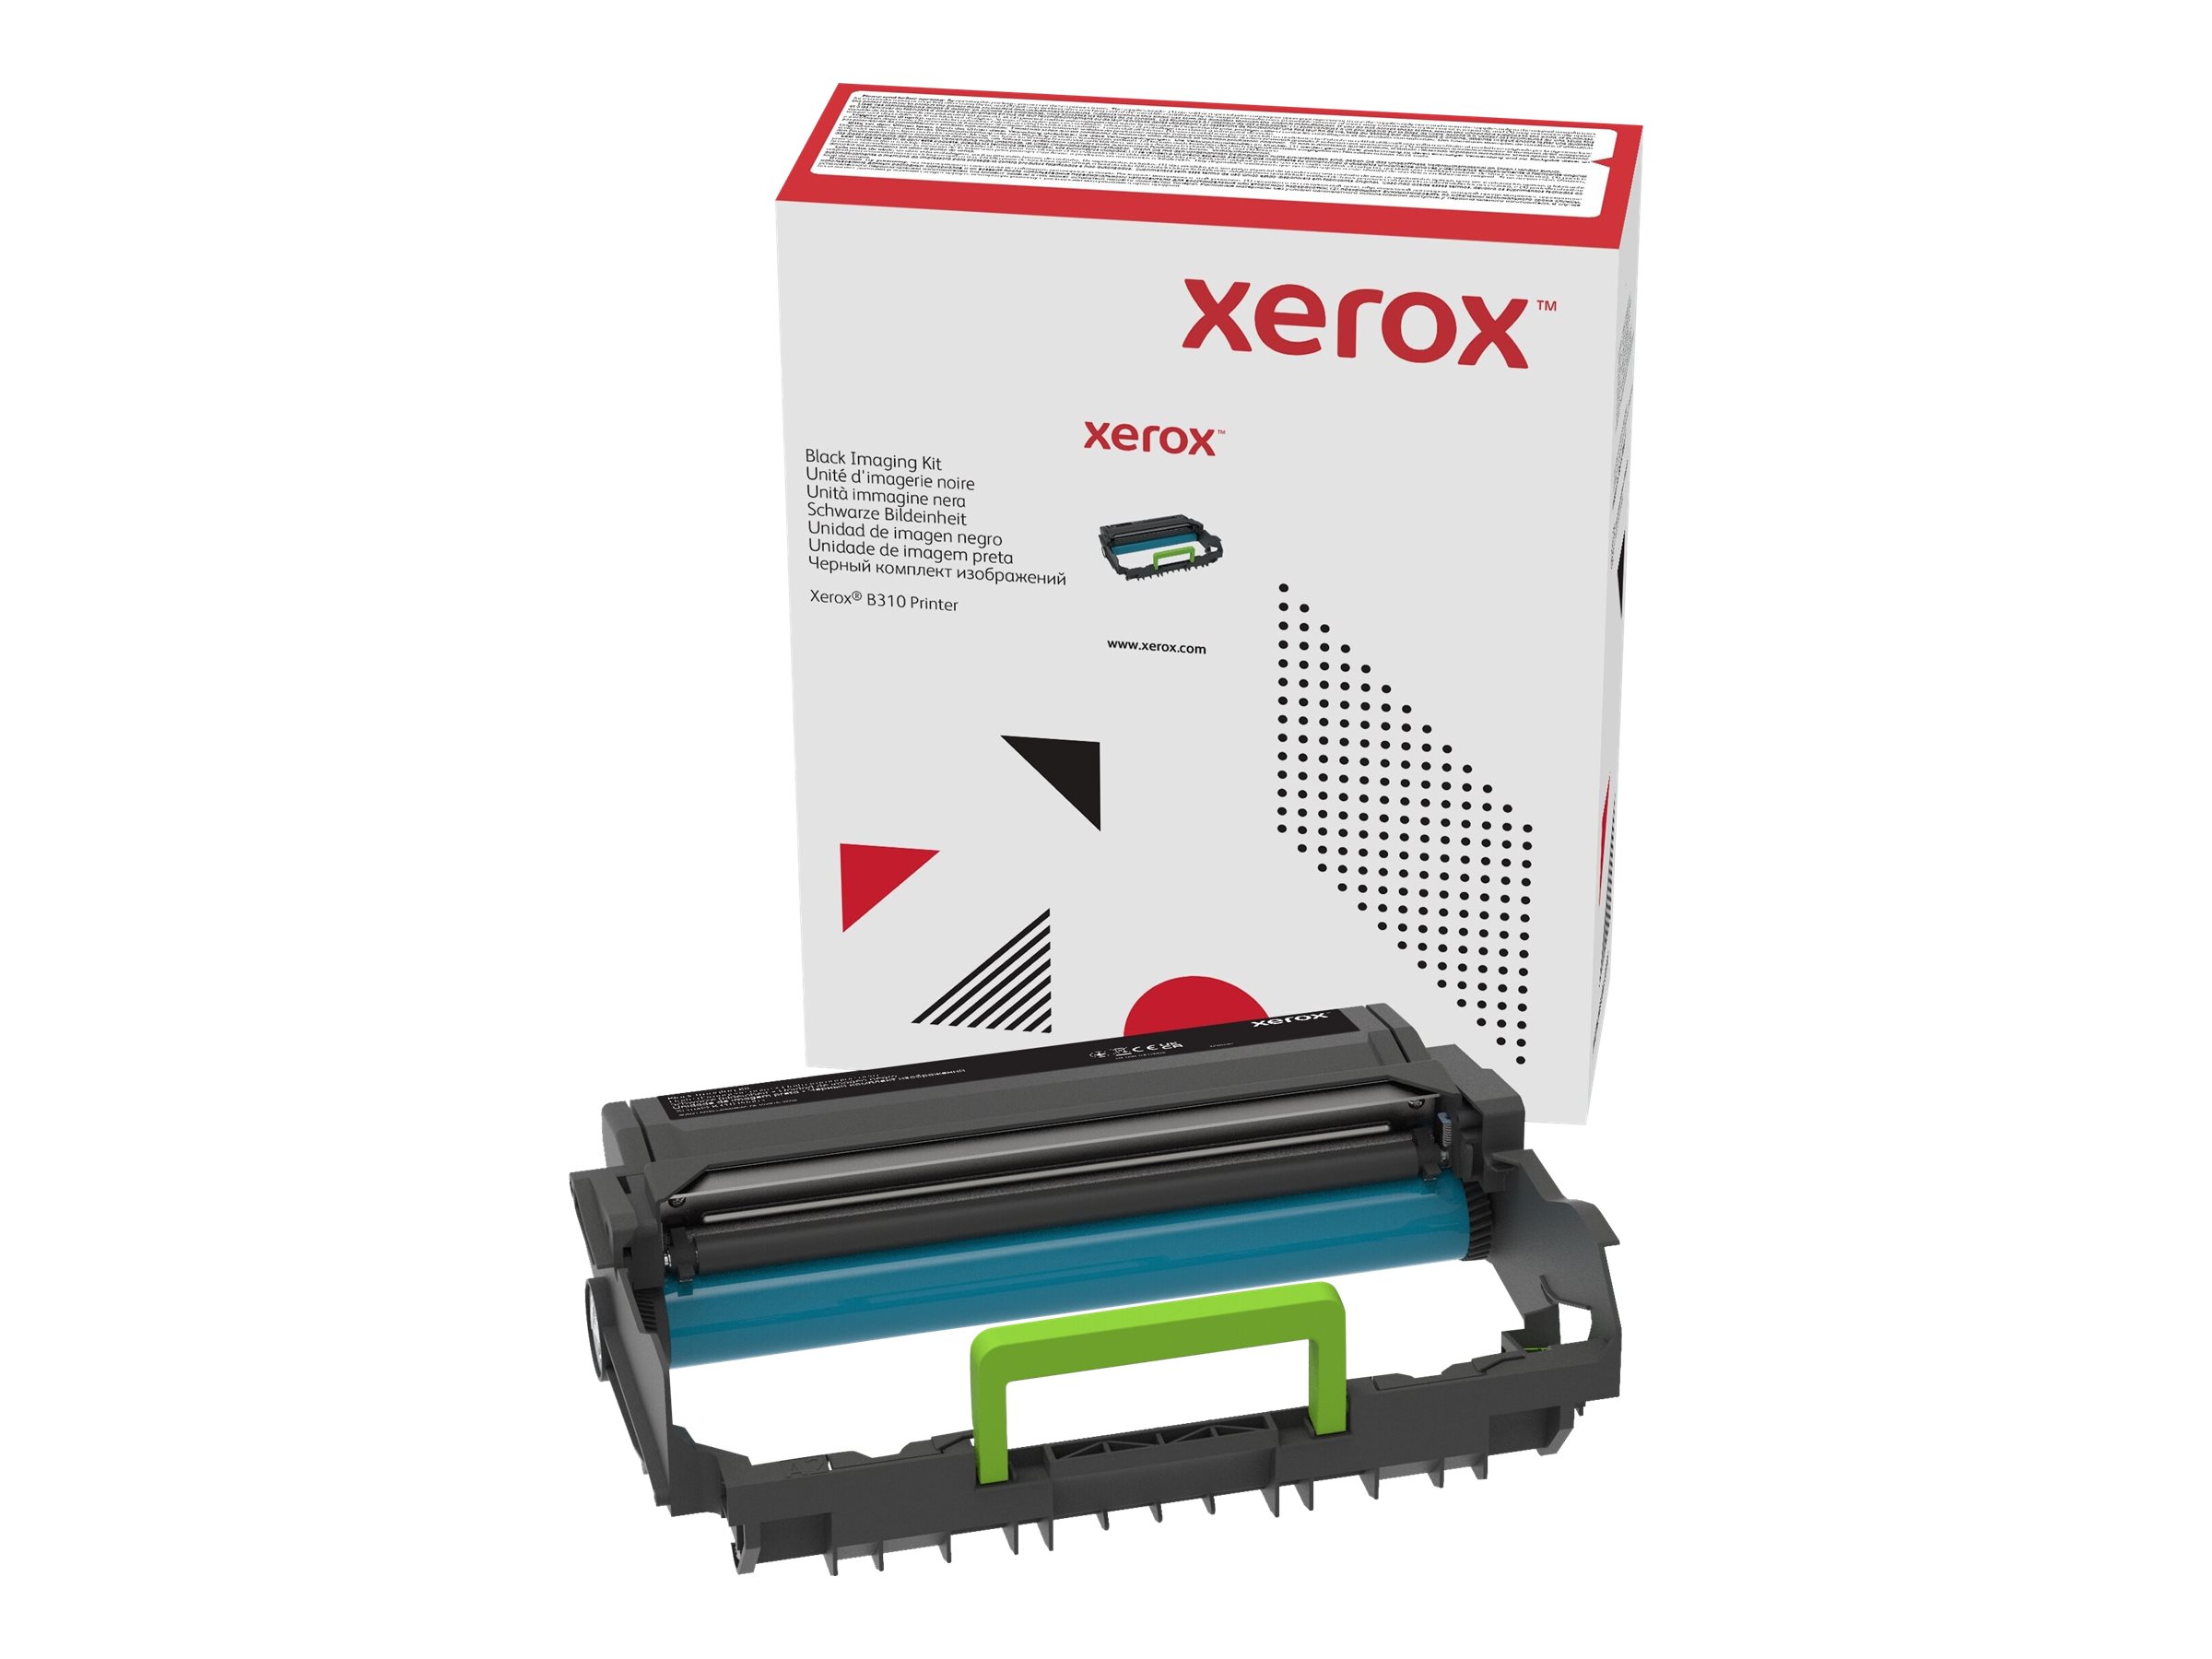 Xerox - Original - Cartouche de tambour - pour Xerox B305, B310, B315, C315 - 013R00690 - Autres consommables et kits d'entretien pour imprimante